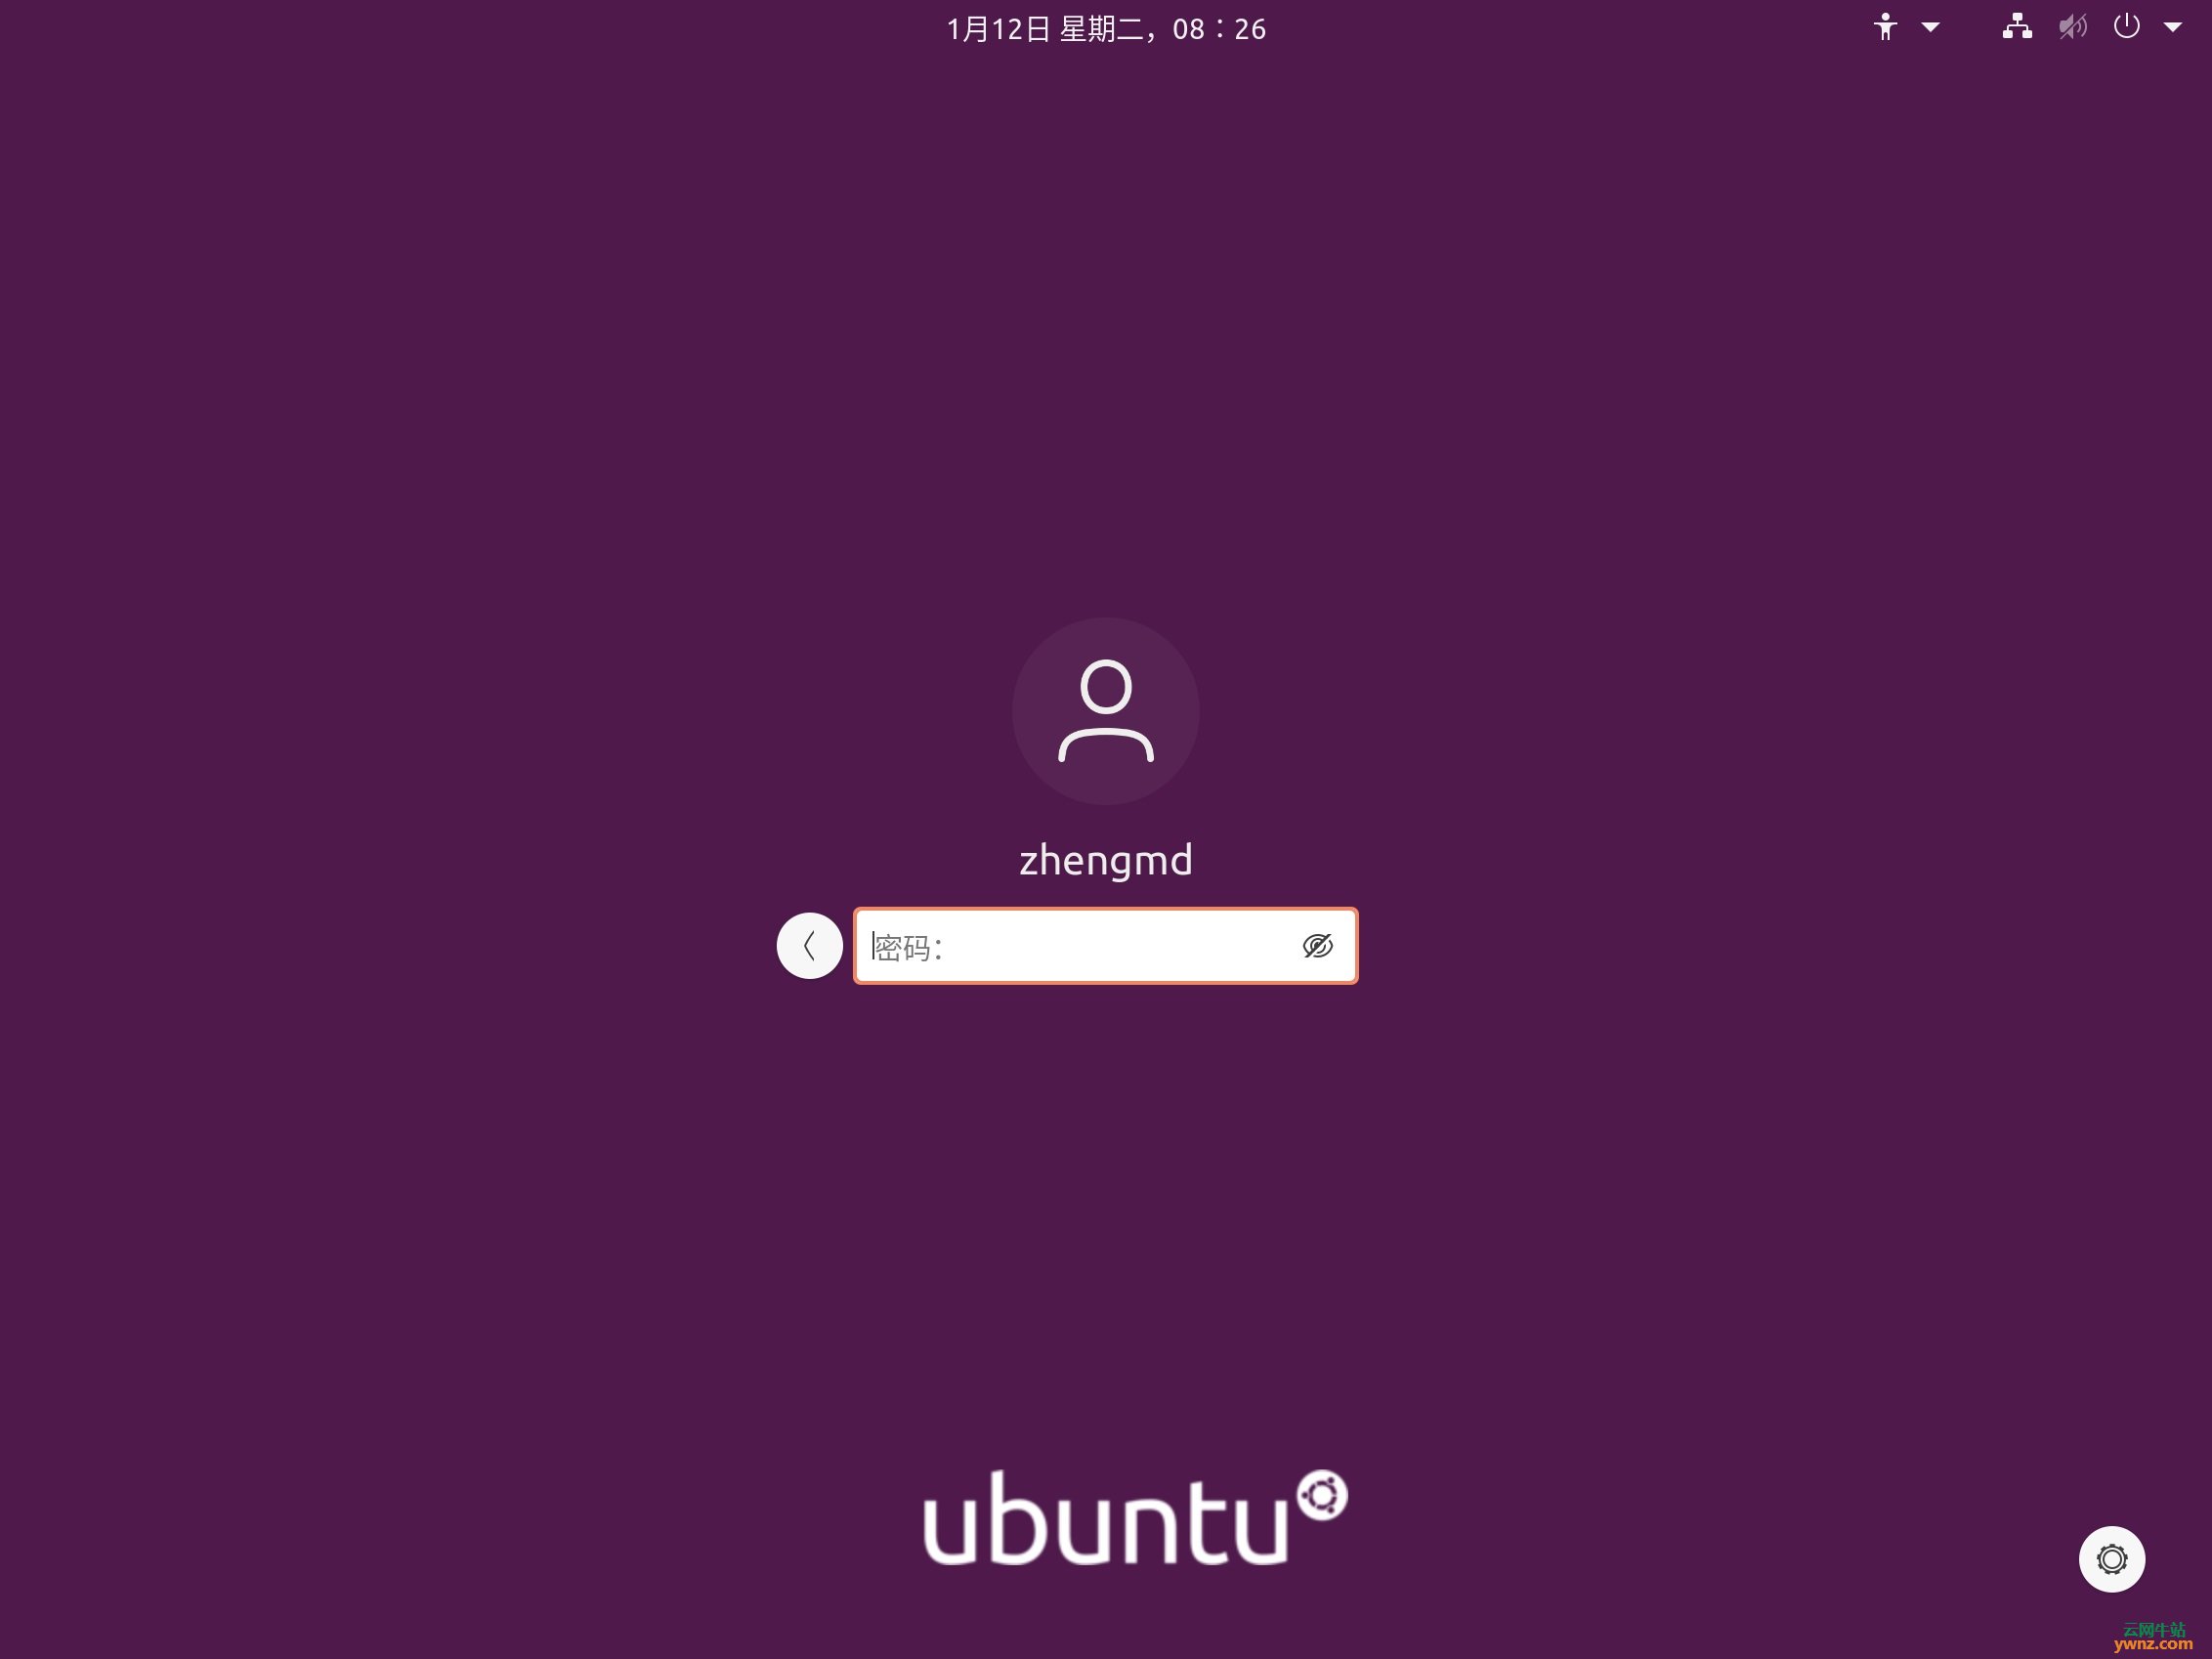 ubuntu可以设置中文嘛?-Ubuntu 操作系统如何轻松设置成中文界面并兼容输入法